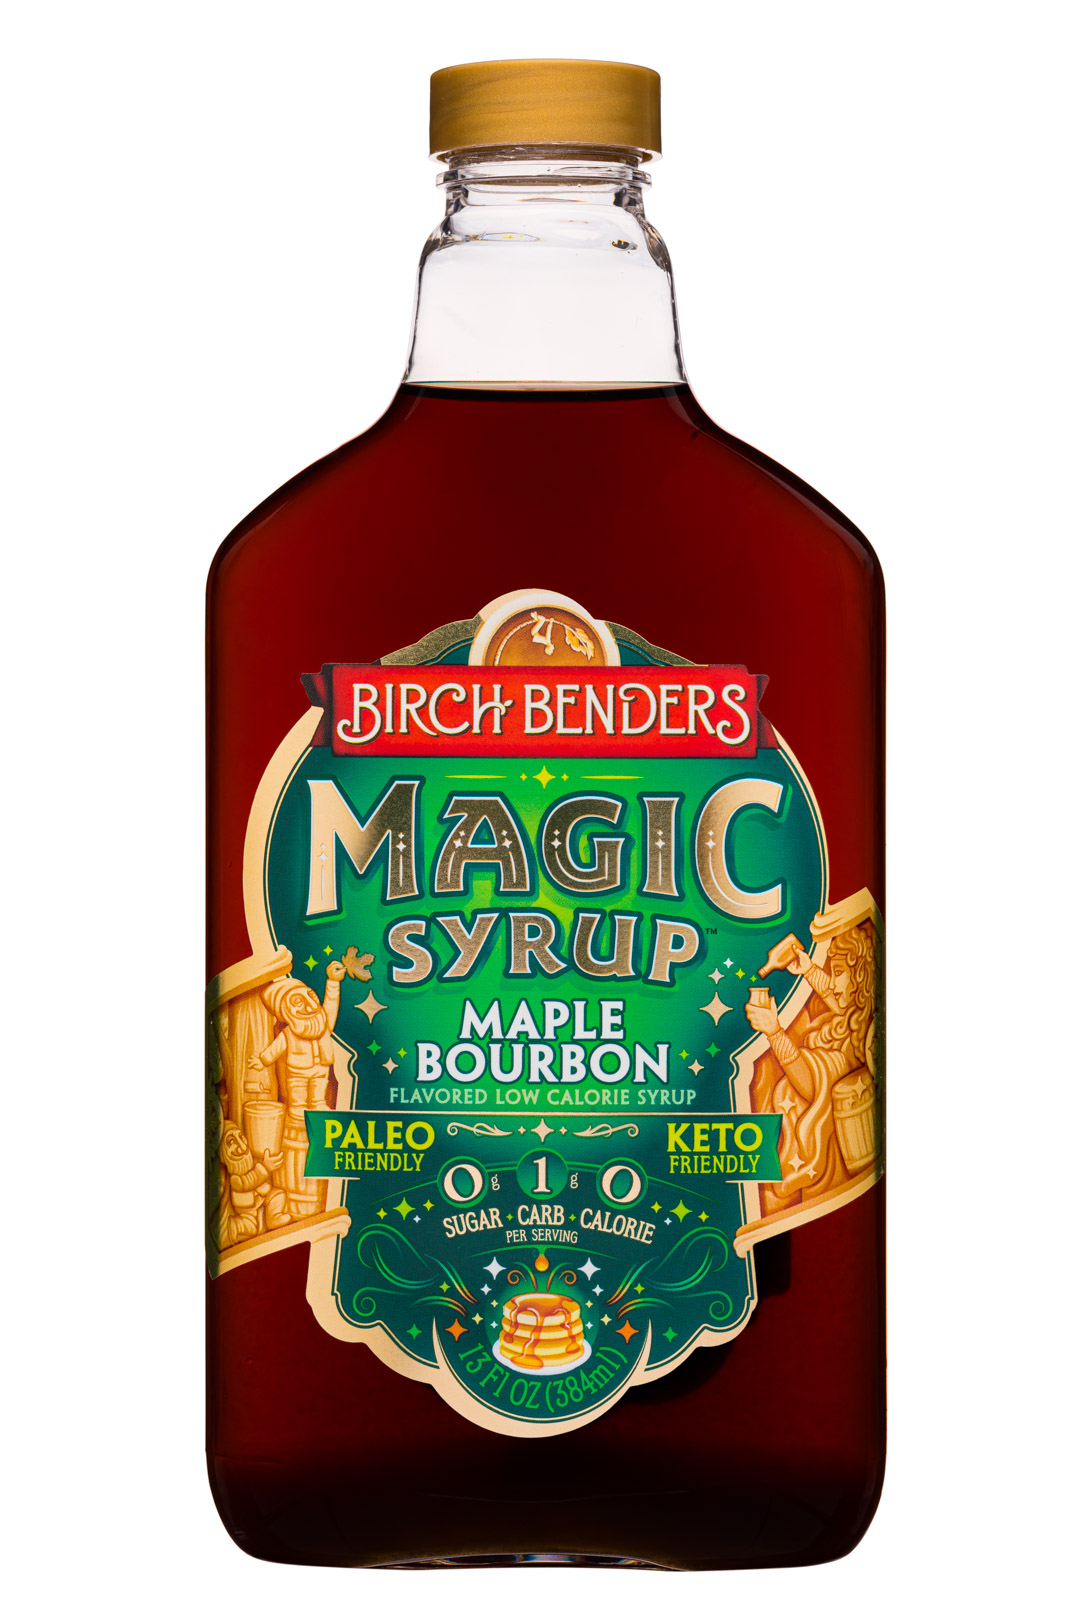 Maple Bourbon